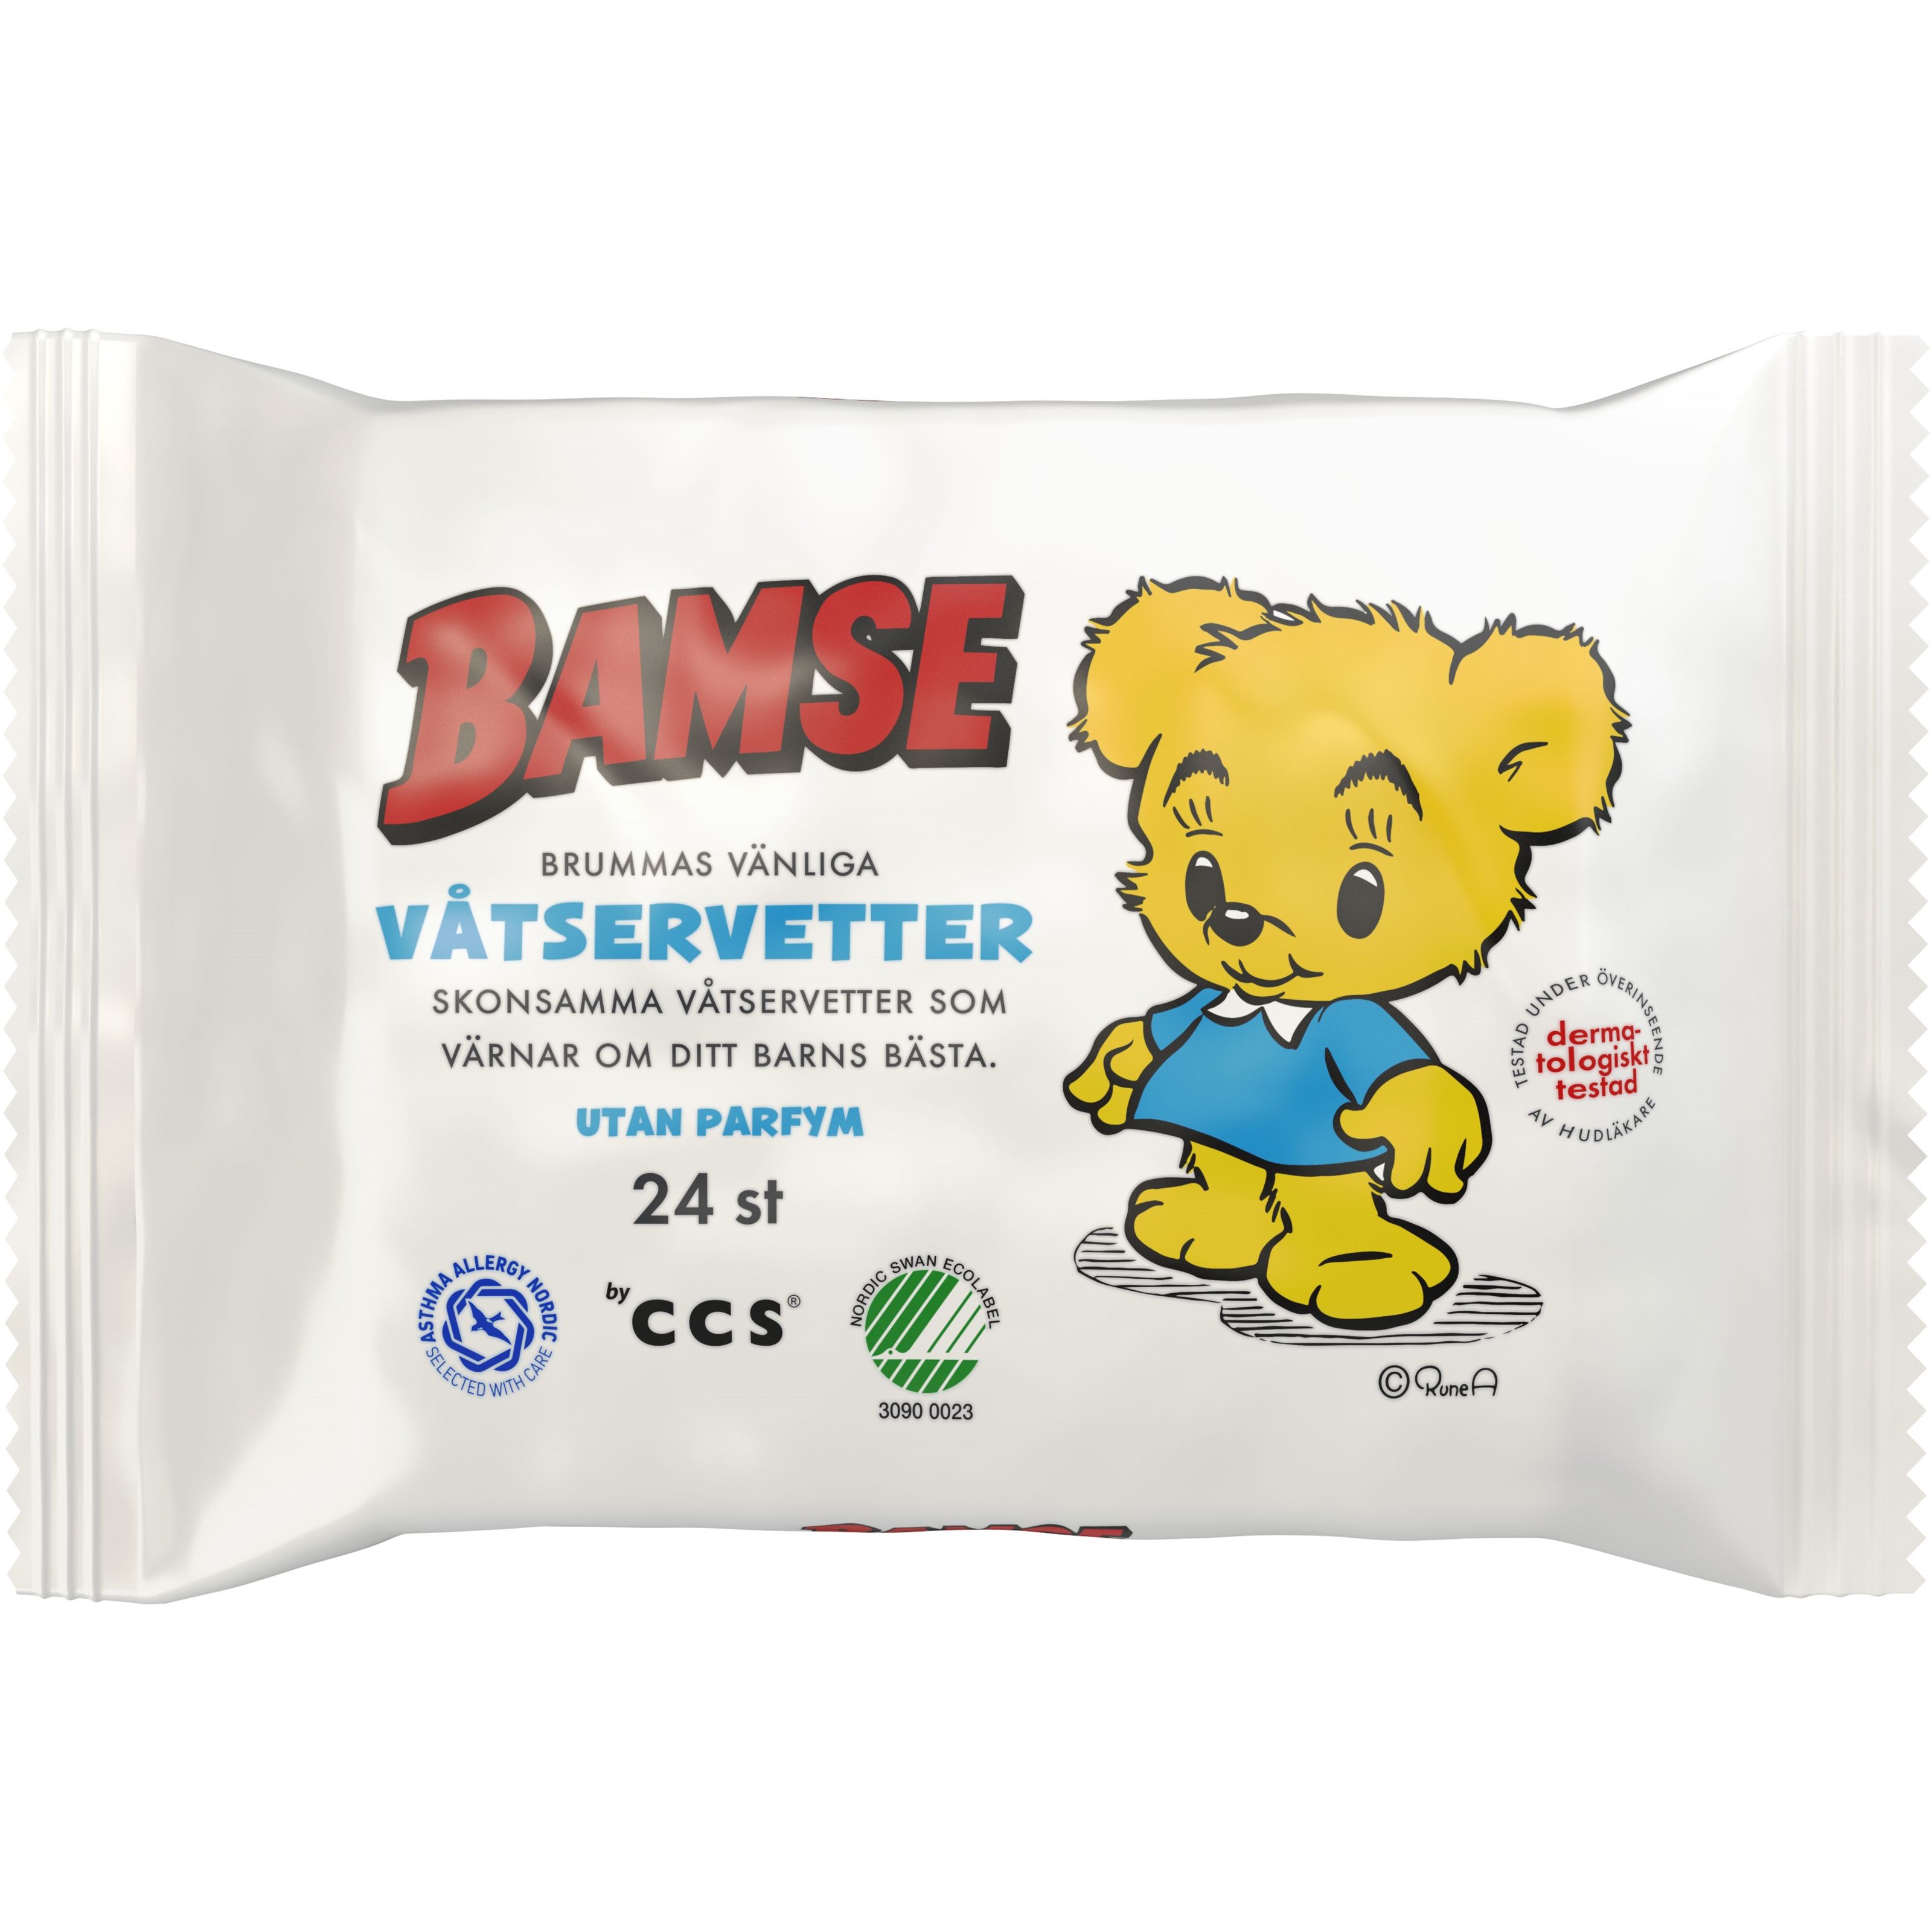 Bamse by CCS Bamse Brummas Härliga Våtservetter 24 st